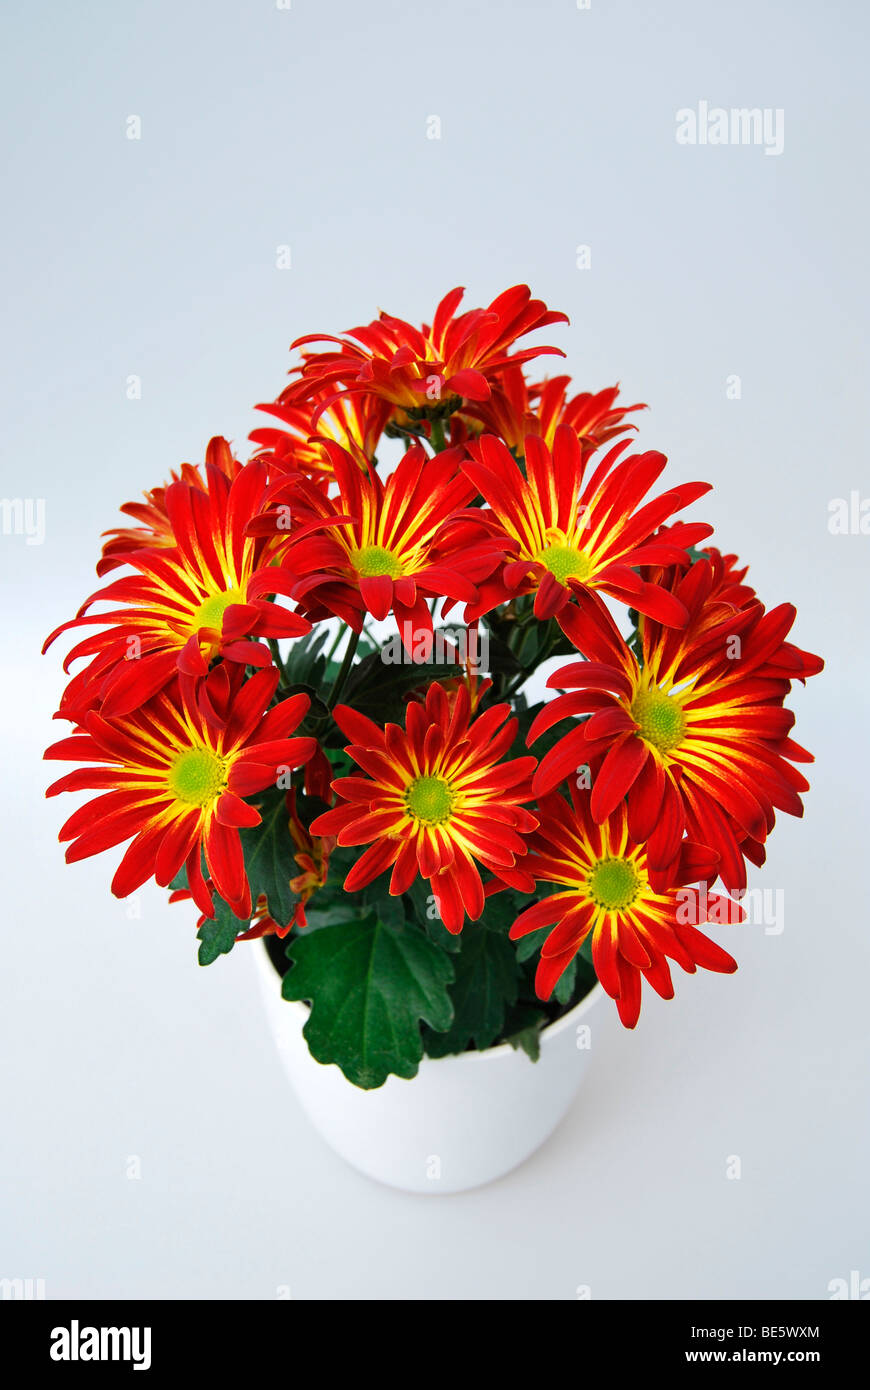 Chrysanthemum (Chrysanthemum indicum hybrid), red and yellow, in flowerpot Stock Photo